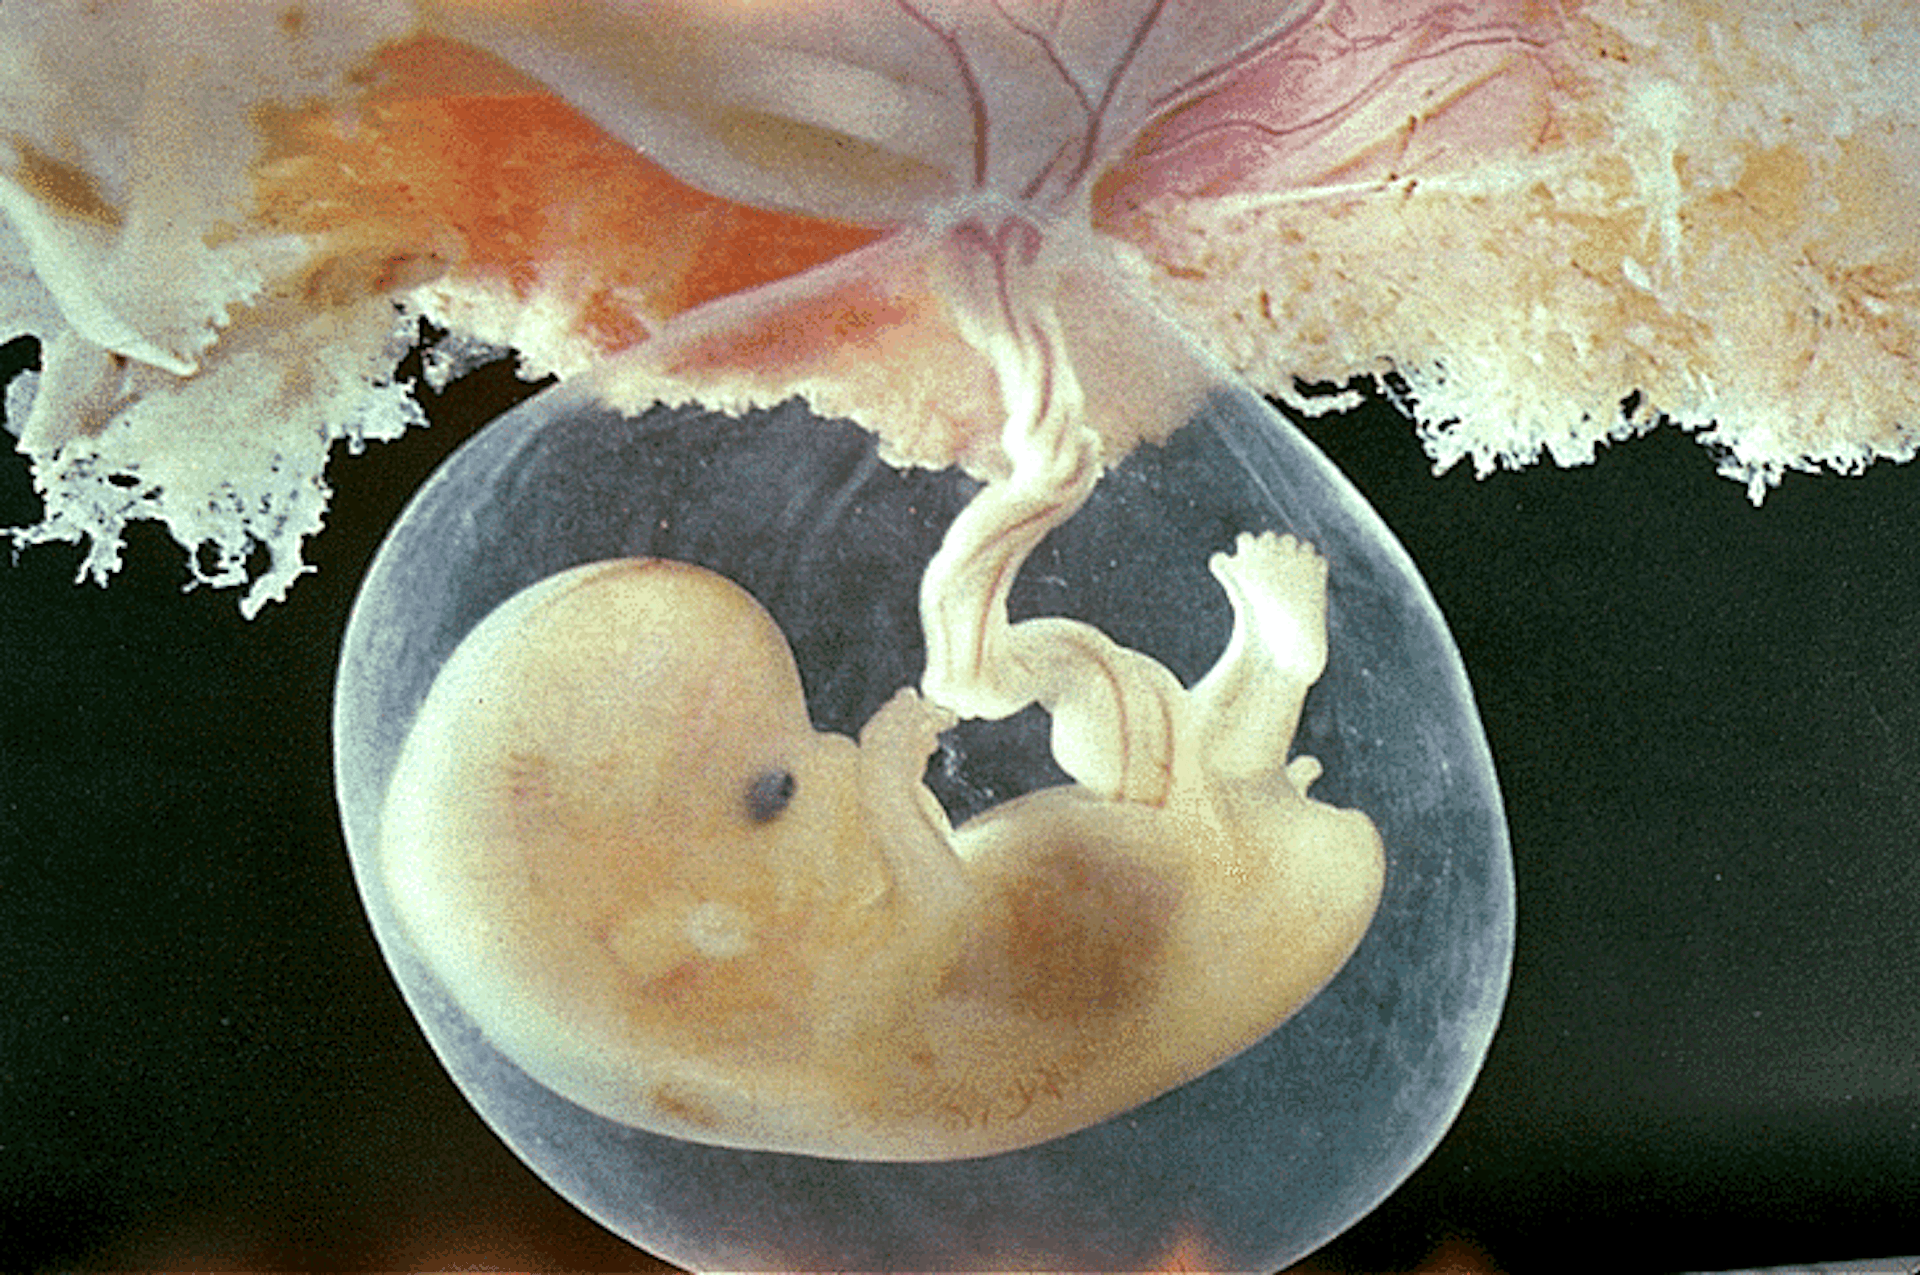 Что происходит на 8 неделе. Зародыш 6-7 недель беременности. Зародыш человека 9-10 недель. Плод на 6 неделе беременности. Эмбрион на 7 неделе беременности.